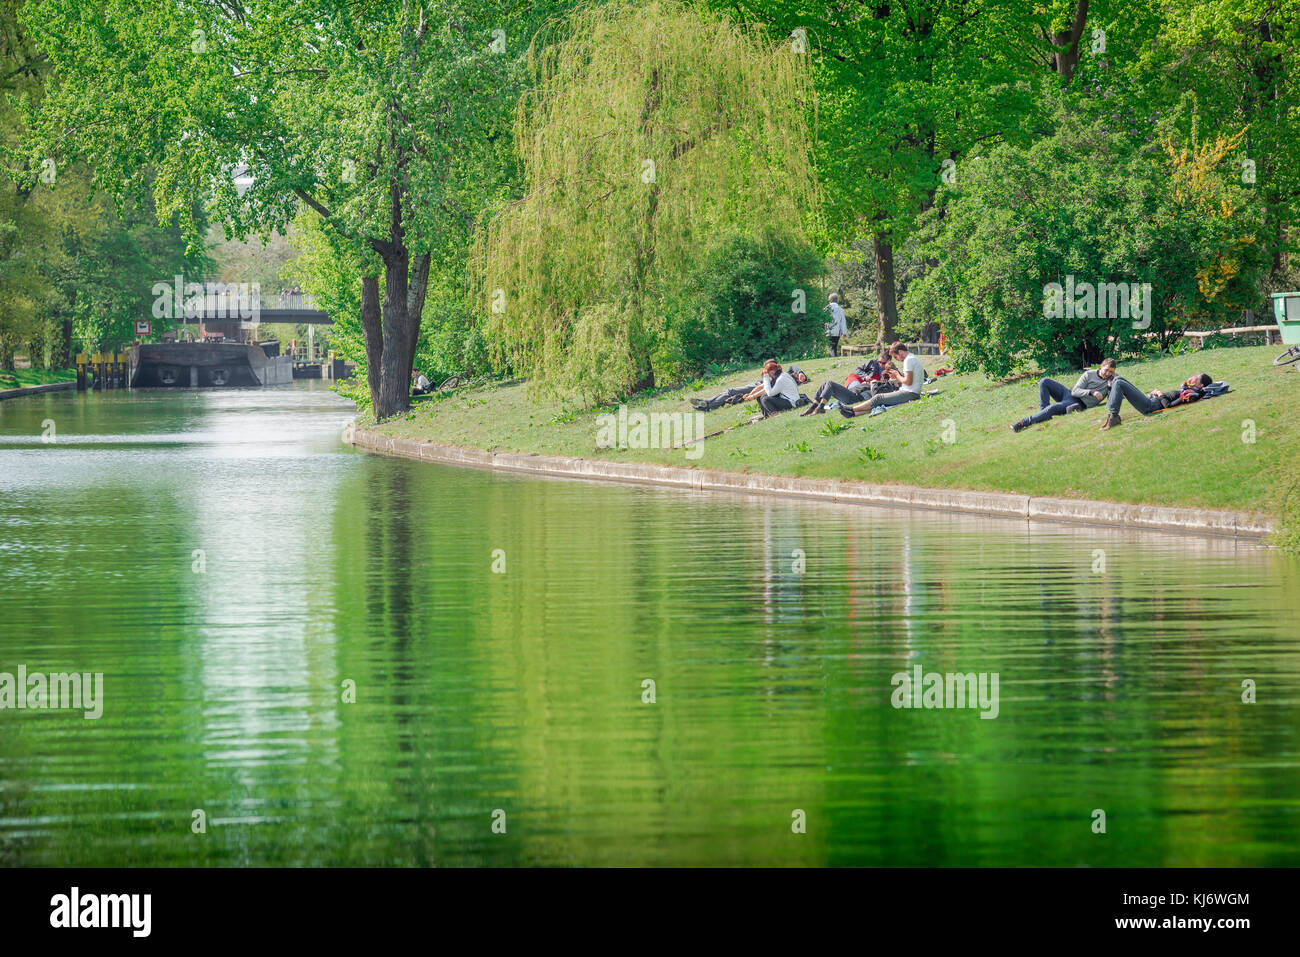 Fiume Berlino, vista dei giovani tedeschi che si rilassano sulle rive del Landwehrkanal in un pomeriggio di primavera nel parco Tiergarten, Berlino, Germania. Foto Stock